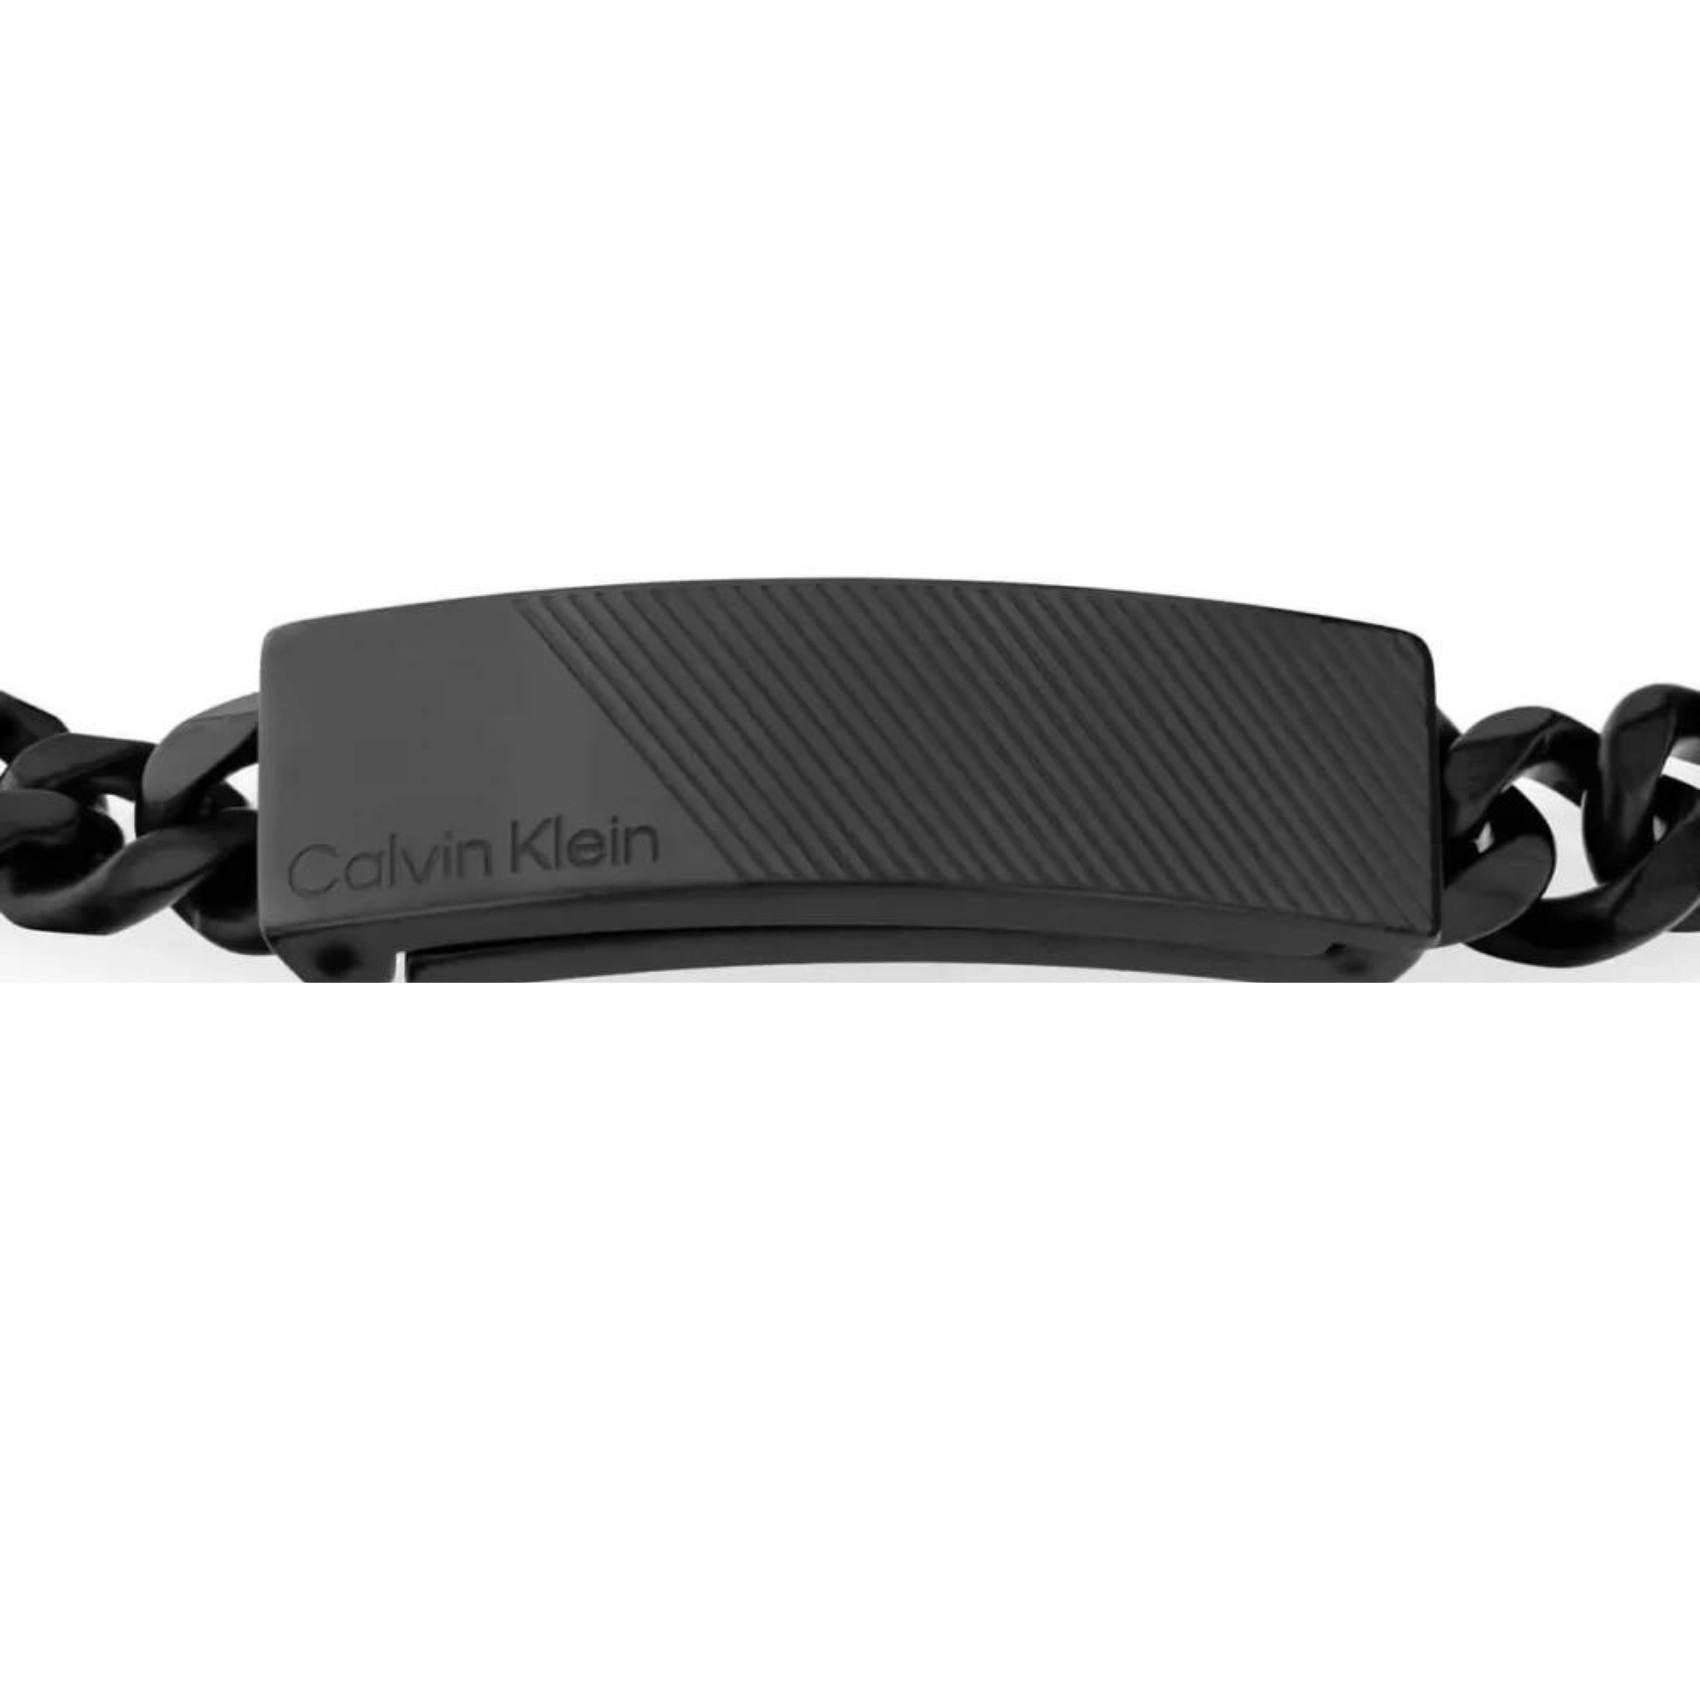 Ανδρικό βραχιόλι Calvin Klein 35000418 κατασκευασμένο από ατσάλι σε μαύρο χρώμα με σχέδιο μπρασελέ και μαύρο μαγνητικό κούμπωμα.